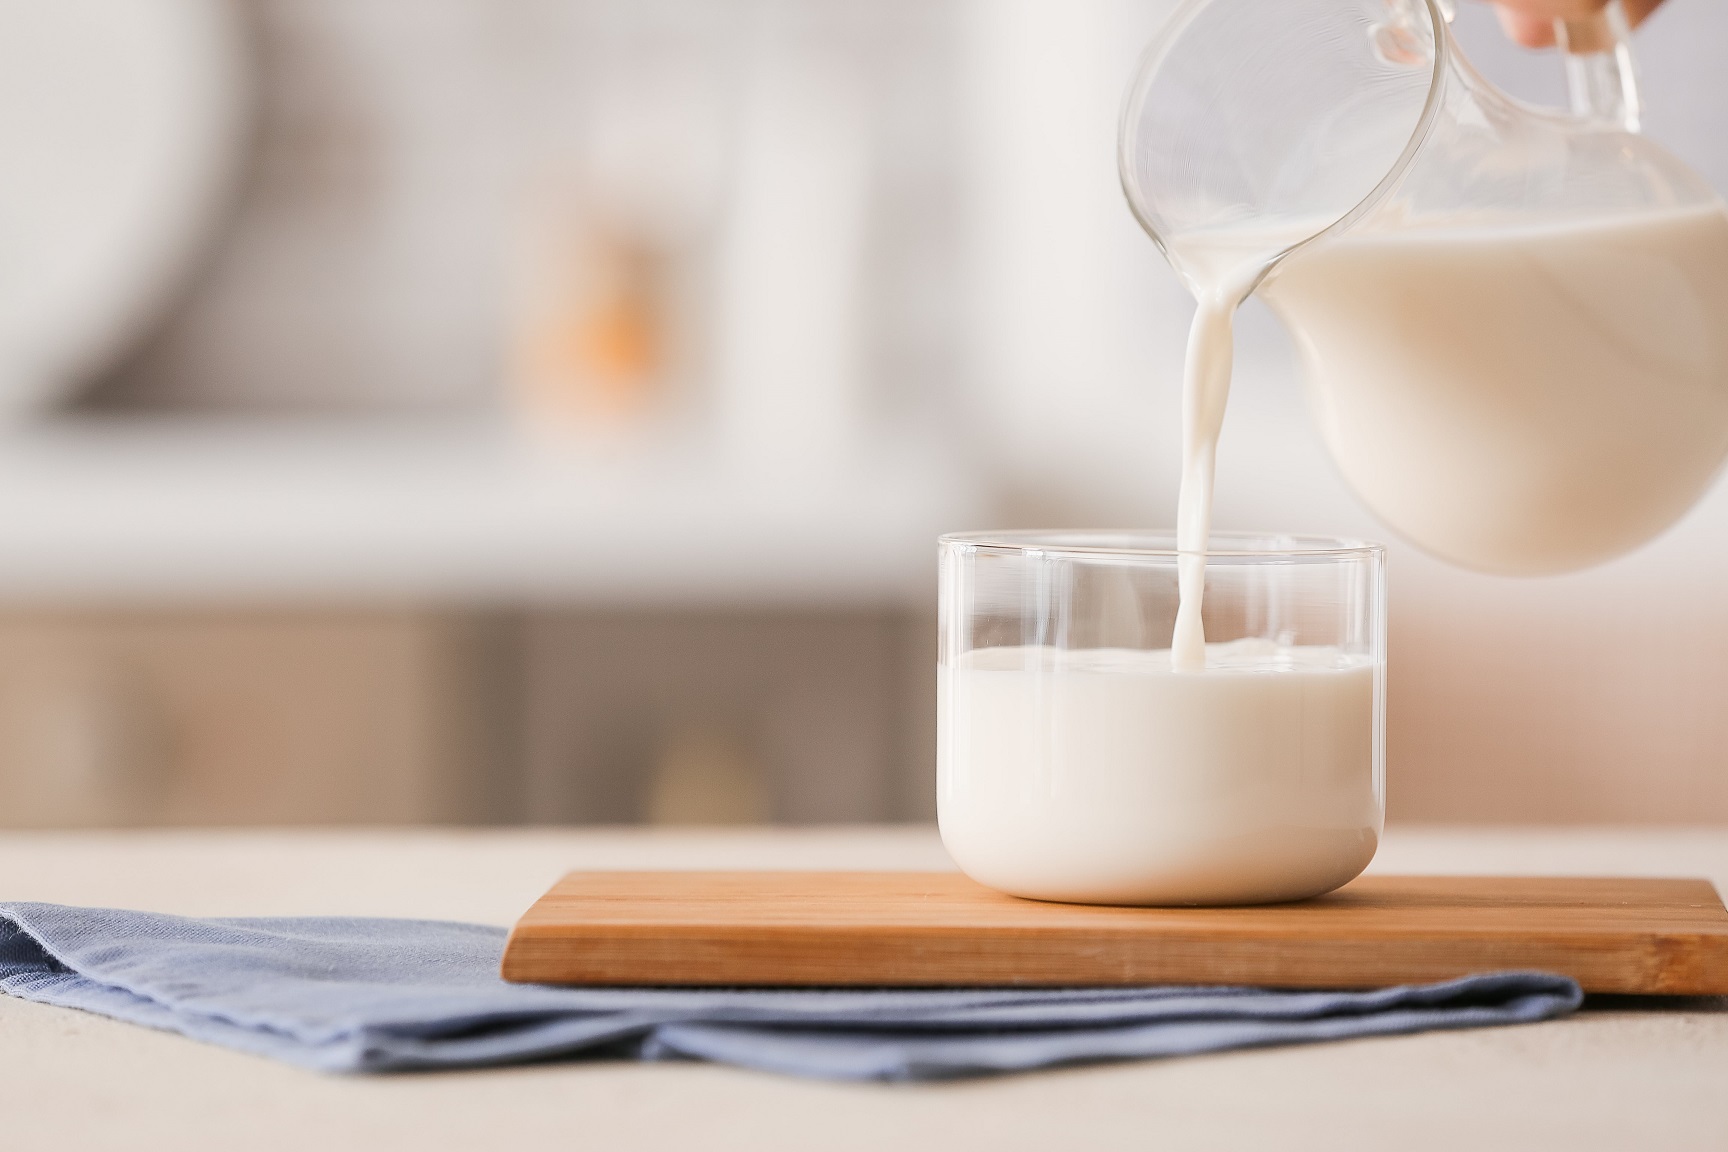 Tři mýty o mléčných výrobcích